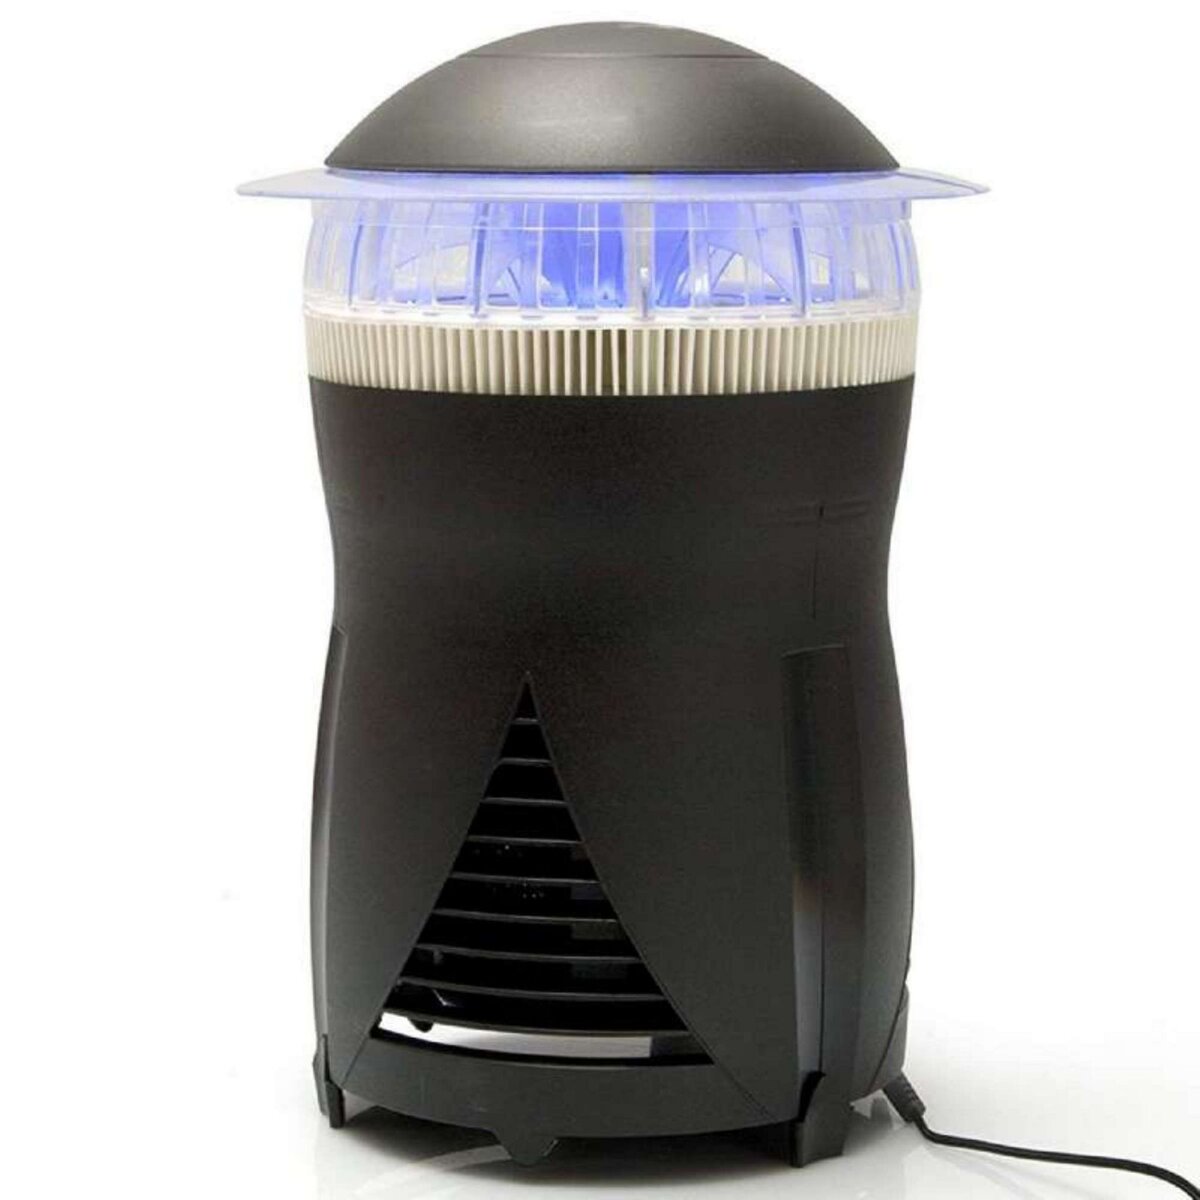  Électro-insecticide lumière LED et aspiration Mosquito-Zan  500m2